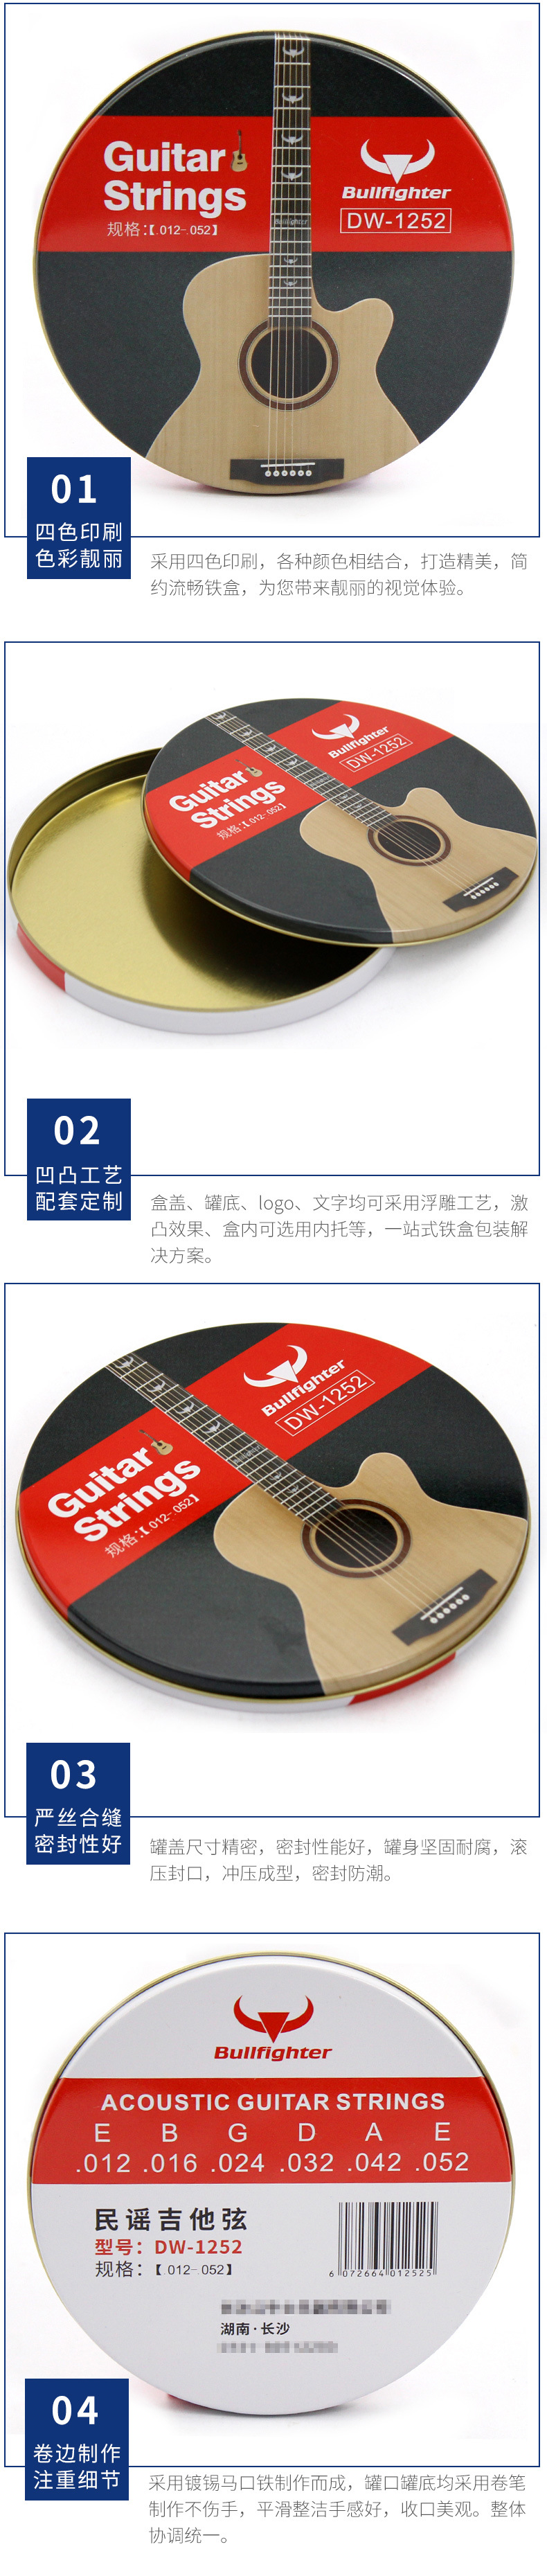 创意礼品马口铁罐厂家 吉他乐谱铁罐制作 生产民谣吉他弦铁罐子示例图14